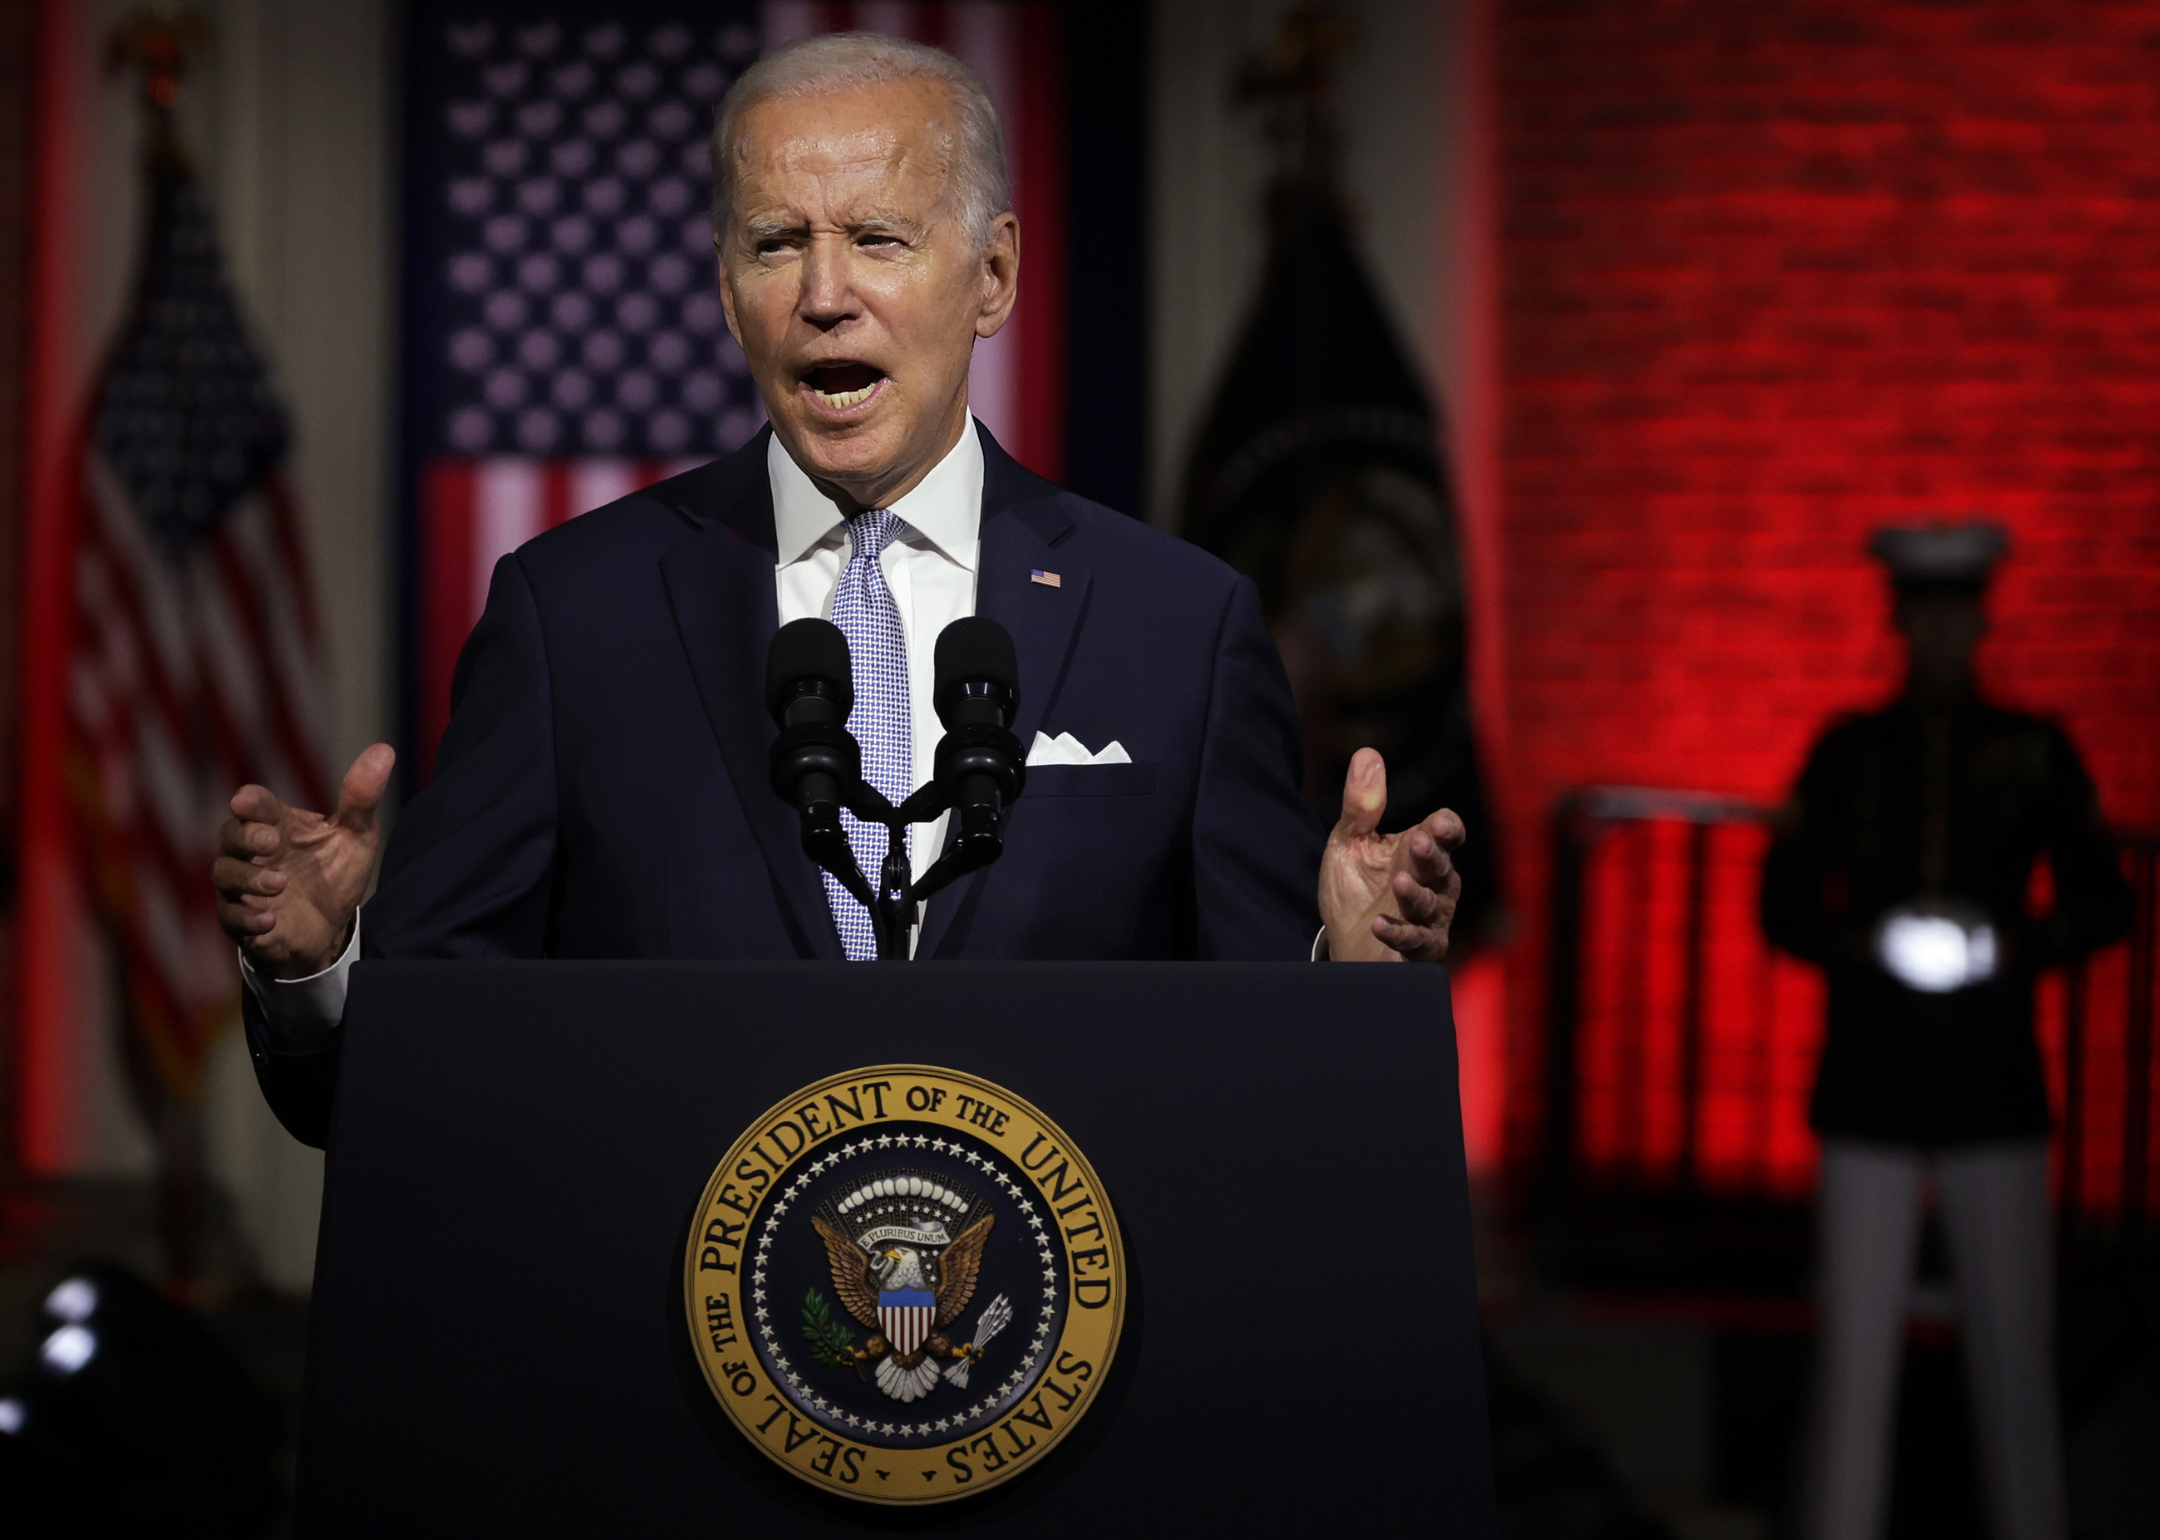 President Biden speaks in Philadelphia, PA on Sept. 1, 2022